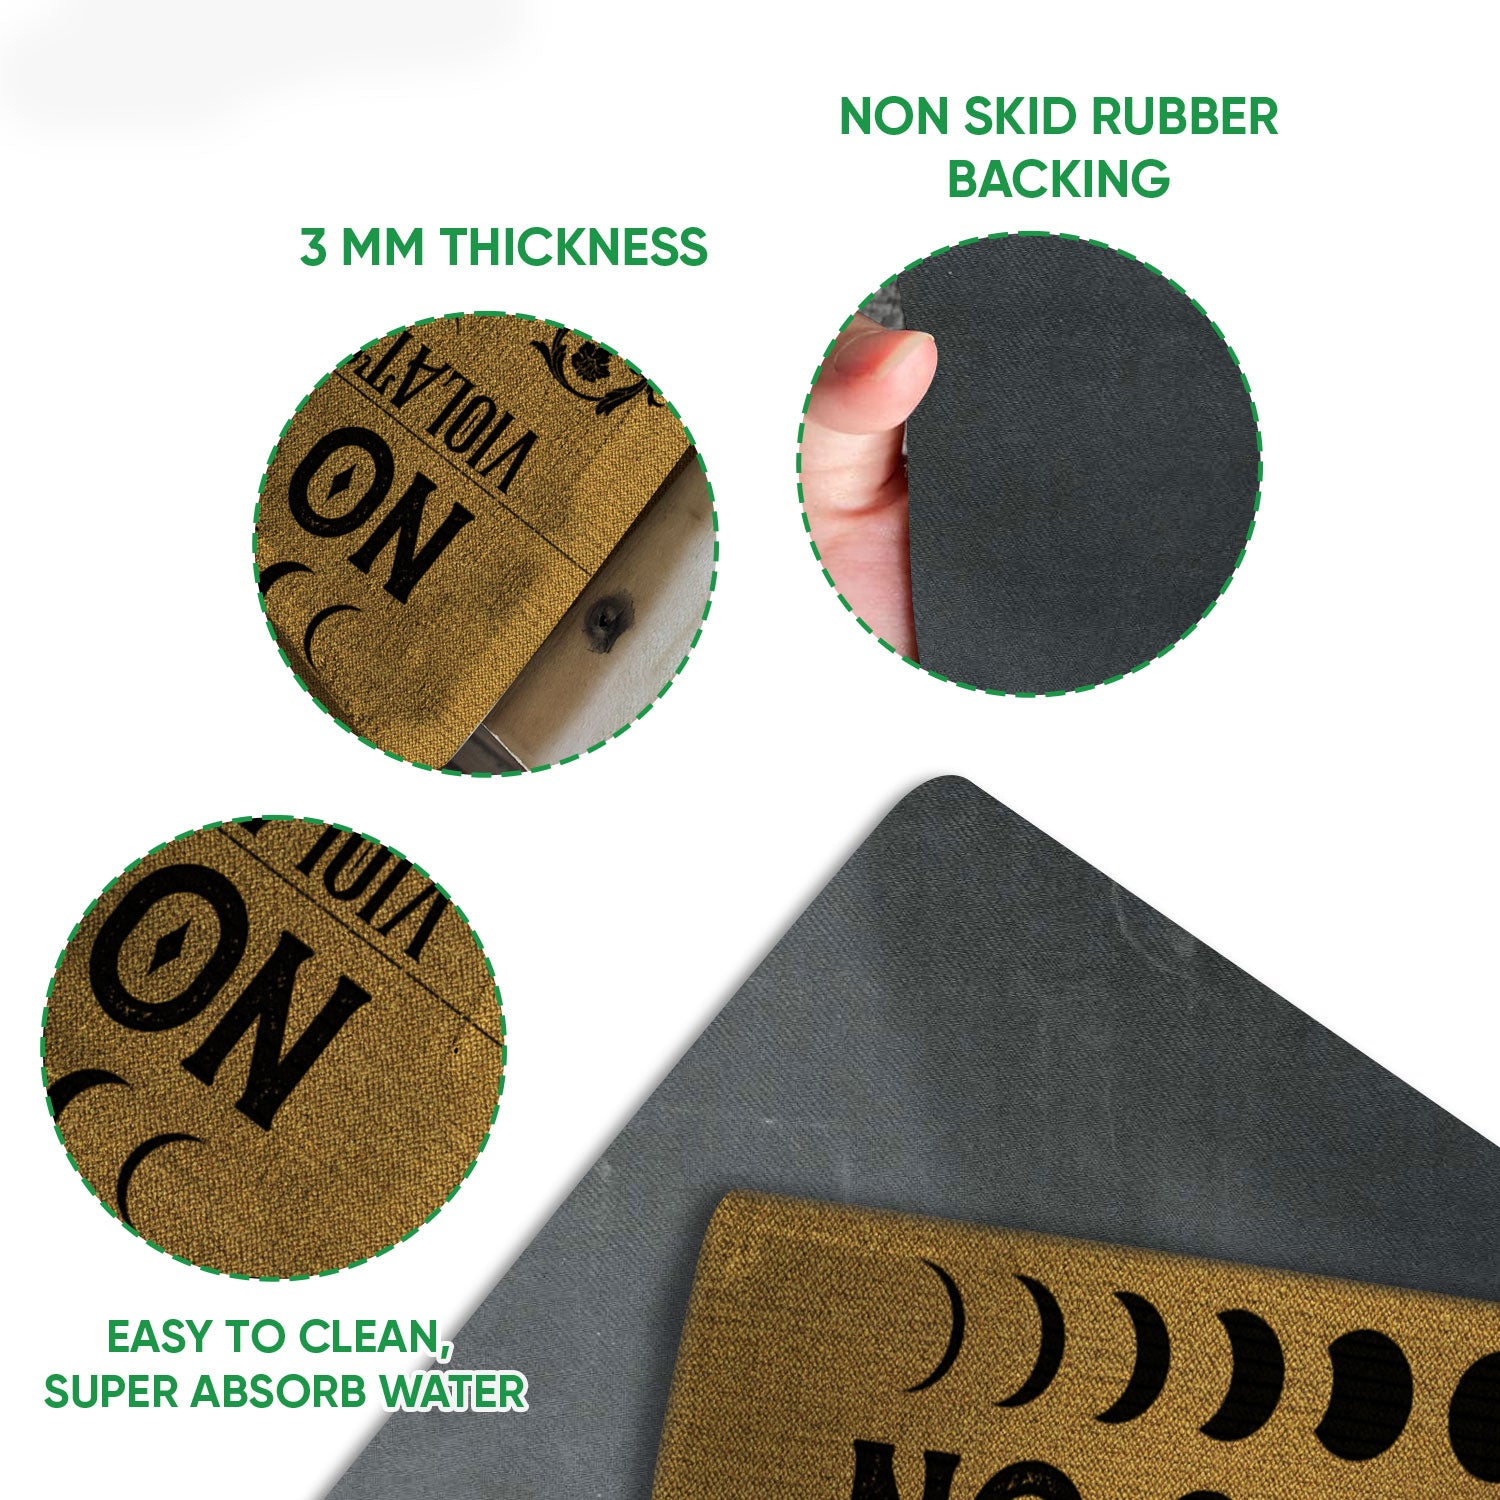 DIY Doormats with Siser® Vinyl - Siser North America